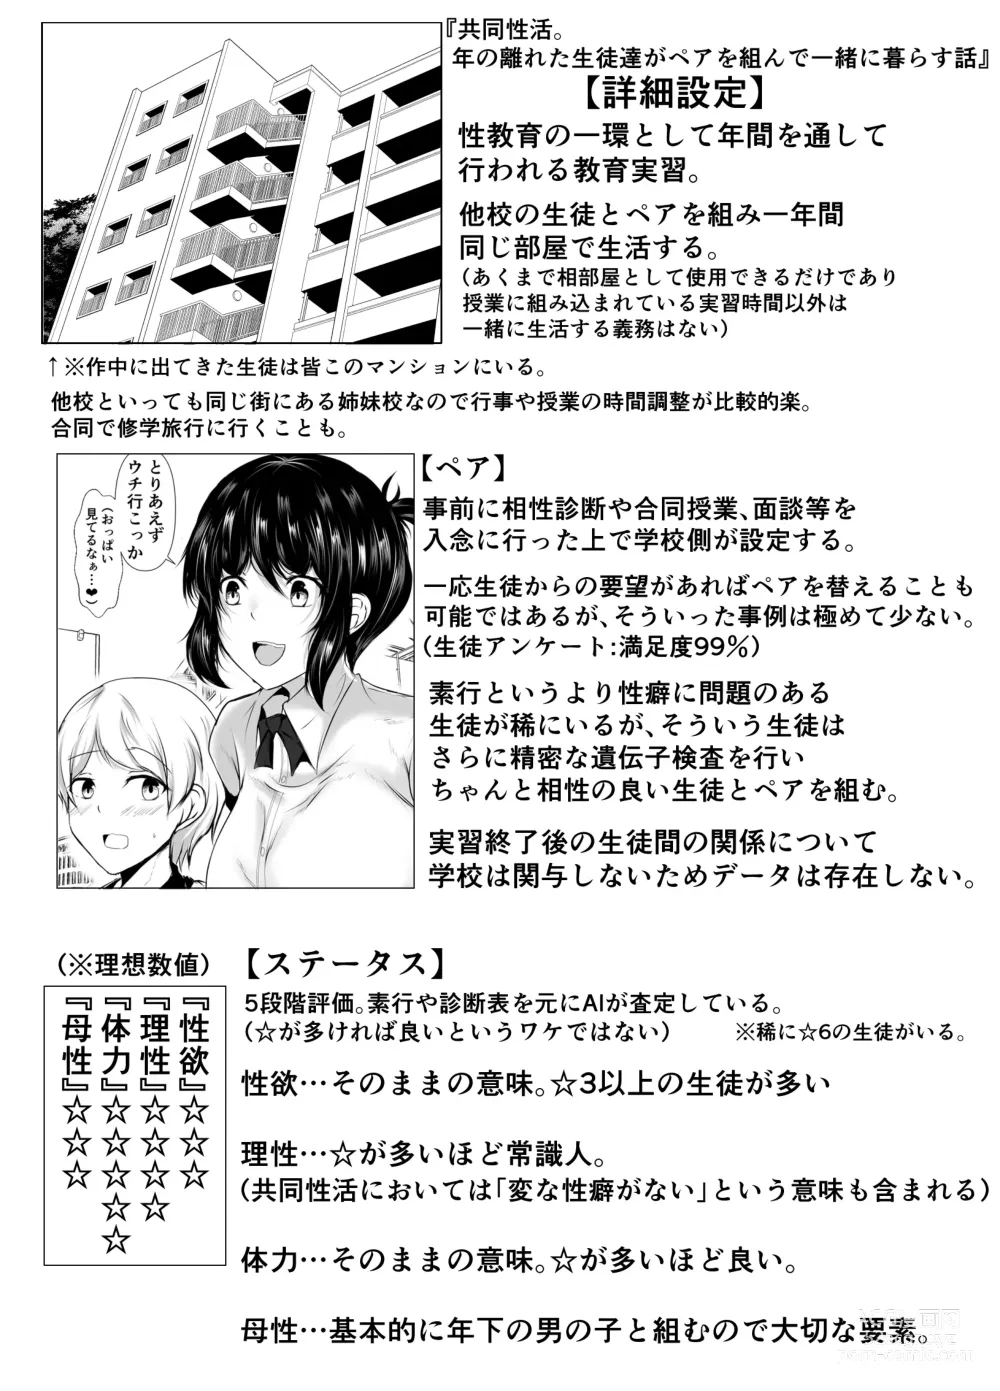 Page 66 of doujinshi kyoudou seikatu 1